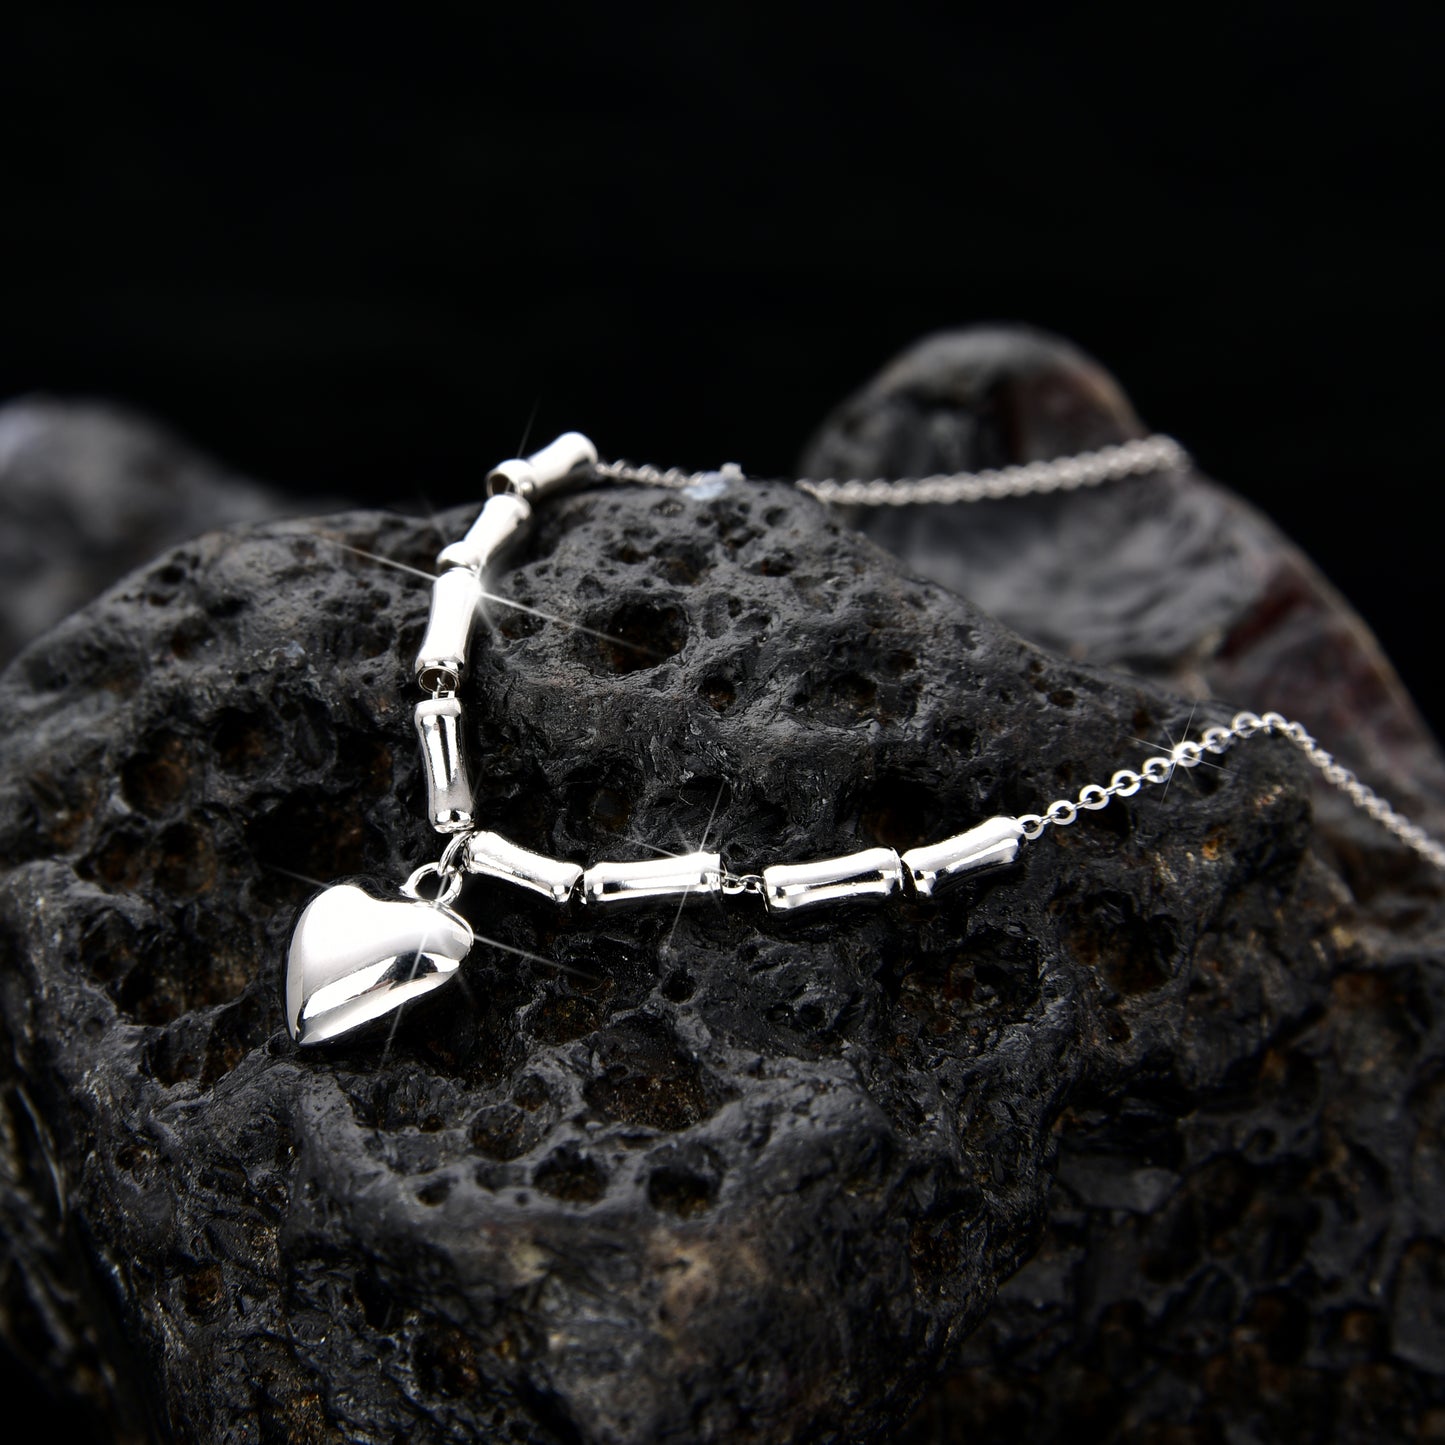 Heart necklace-Women's Jewelry🎁心形项链🎁